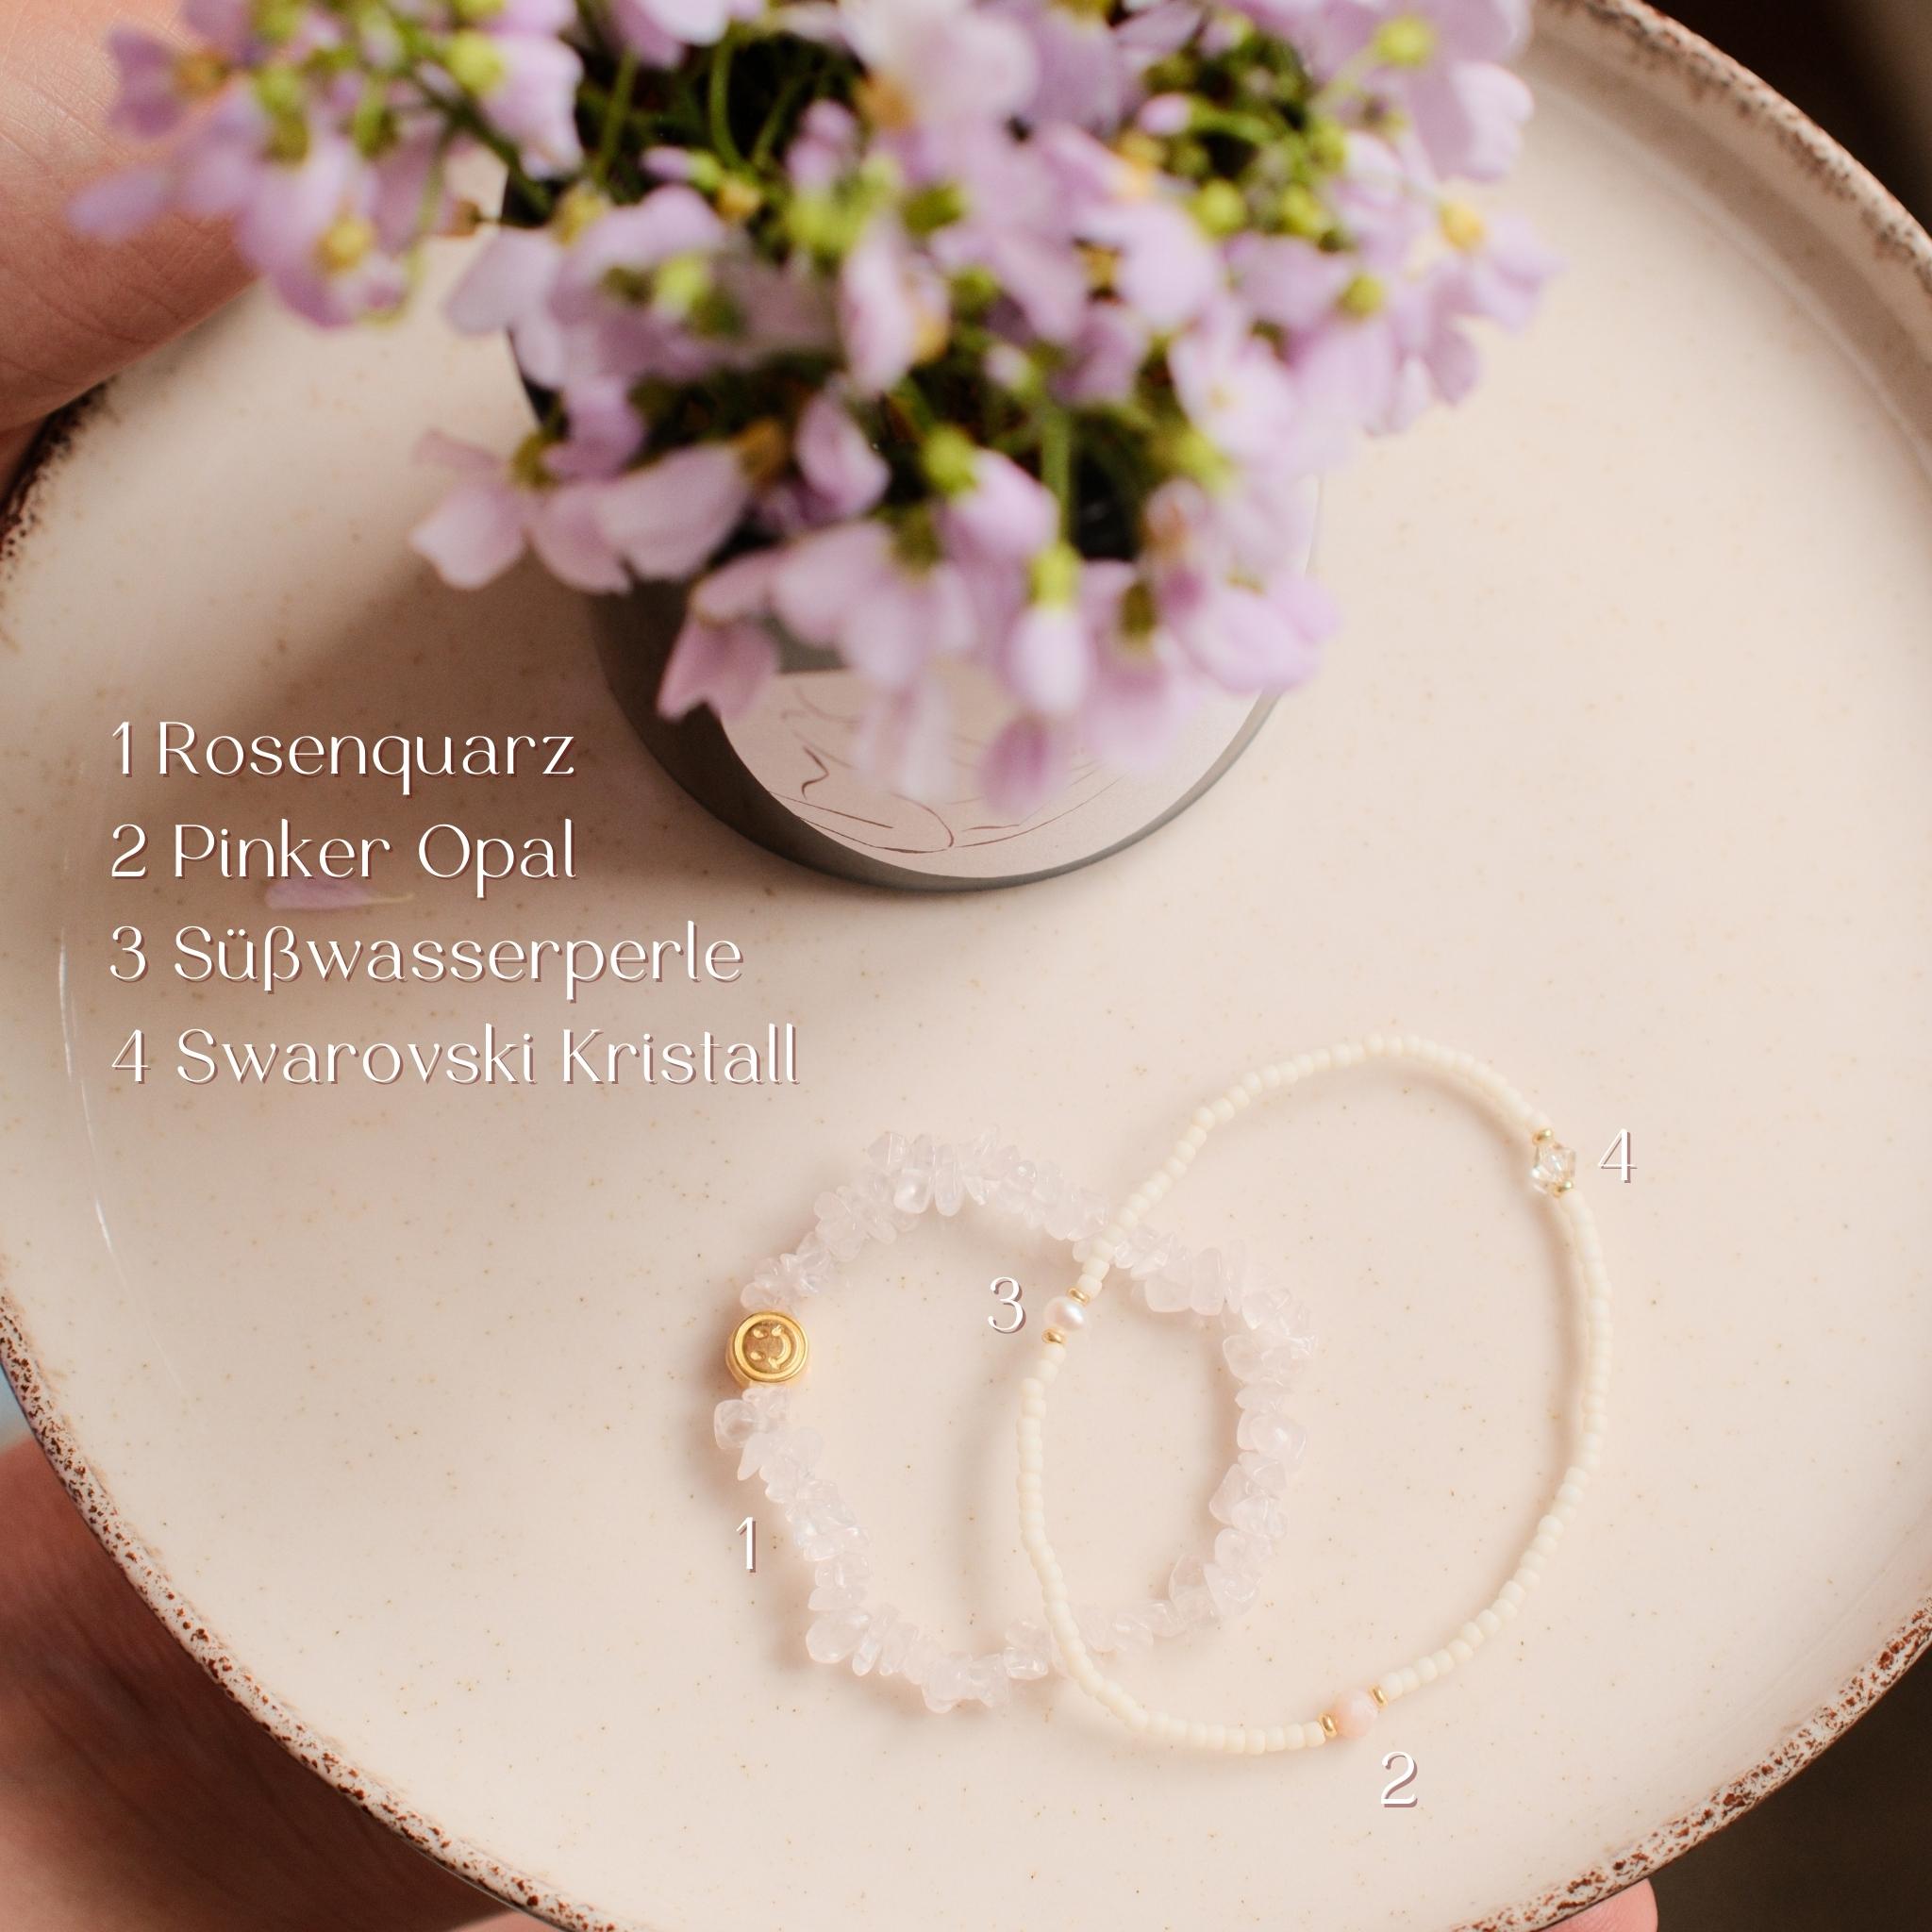 Armbandschmuck liegt auf einem Teller arangiert mit einem Blumenstrauß und auf dem Bild ist eine Produktbeschreibung zu sehen.